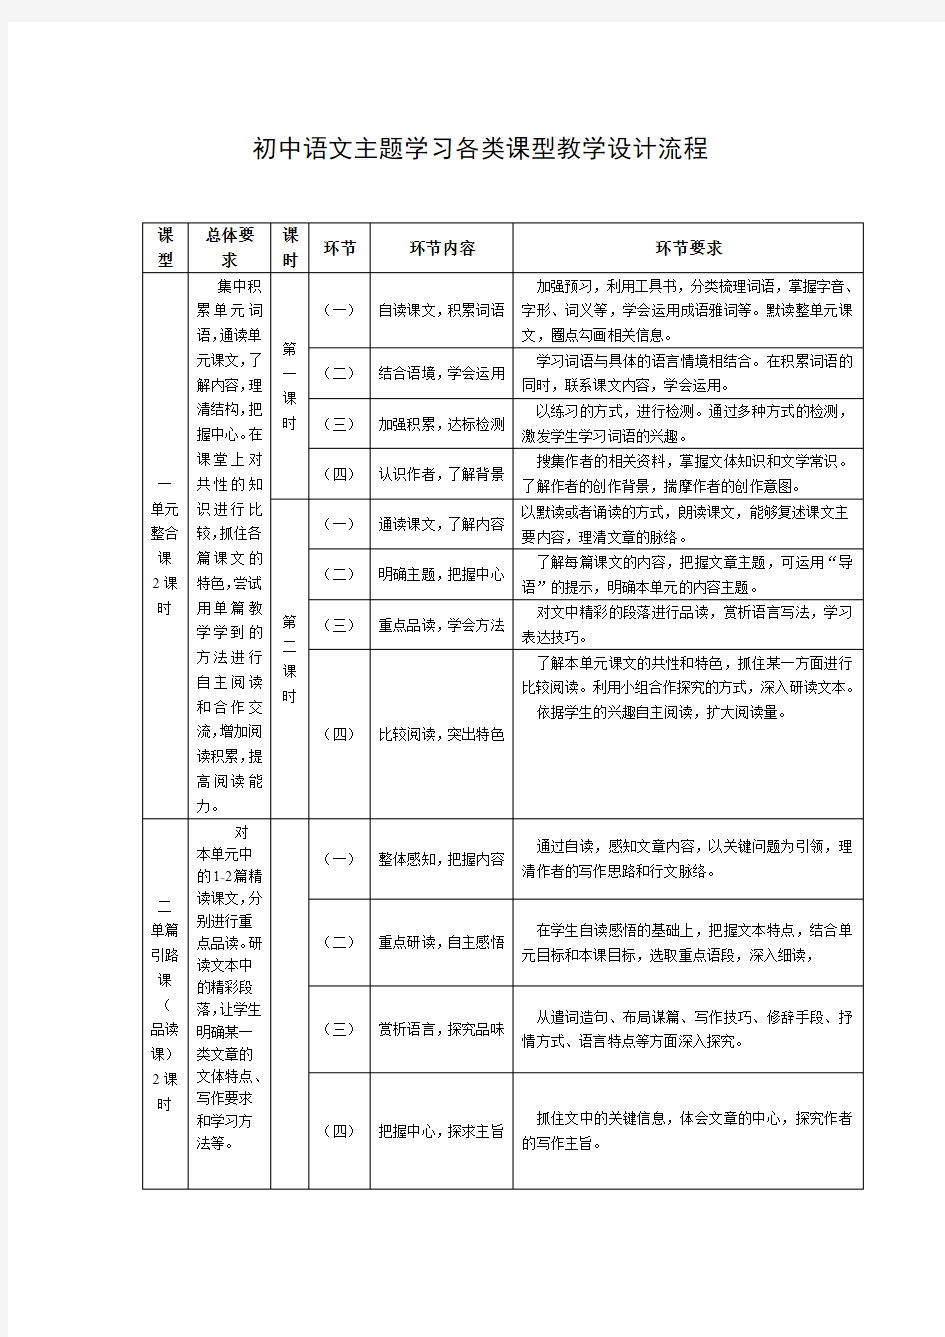 初中语文主题学习各类课型教学设计流程